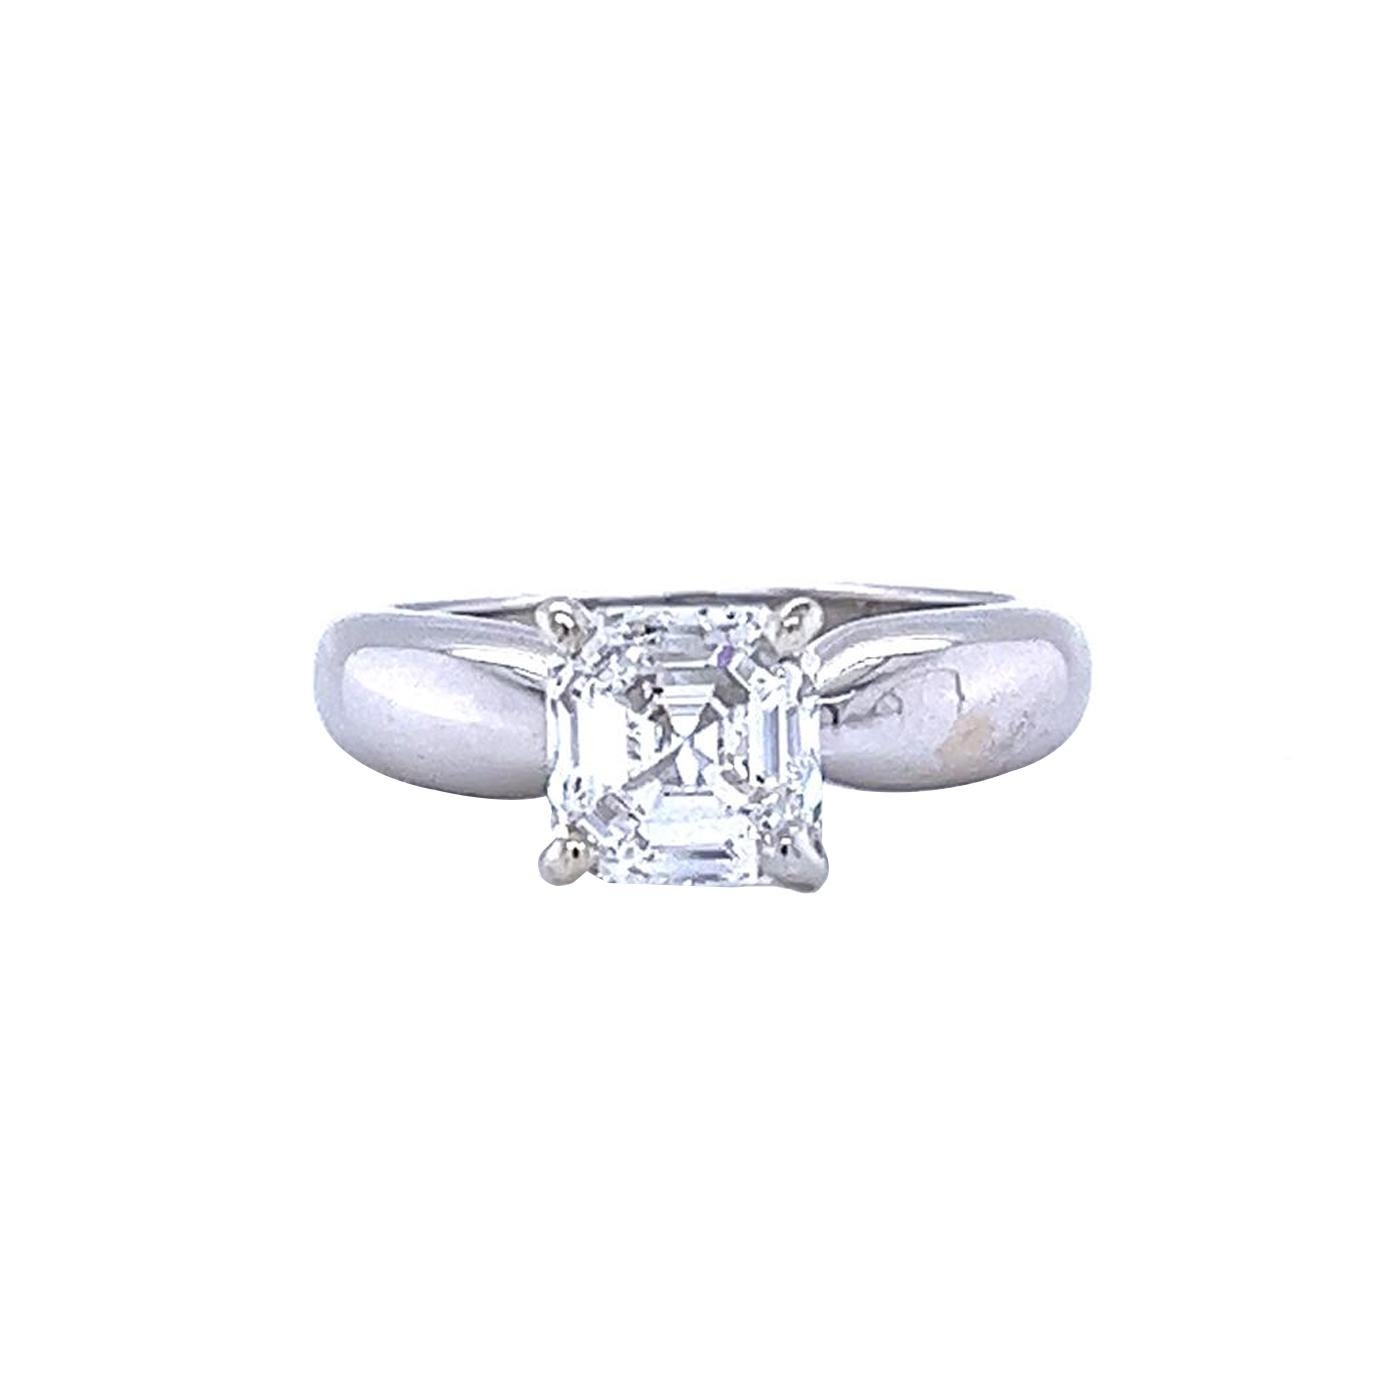 Schöner außergewöhnlicher GIA-zertifizierter Diamant-Brautring. Der Ring ist aus 18 Karat Weißgold gefertigt, von GIA mit exzellentem Schliff und exzellenter Symmetrie bewertet und enthält einen lupenreinen 2,01-Karat-Diamanten im Asher-Schliff mit